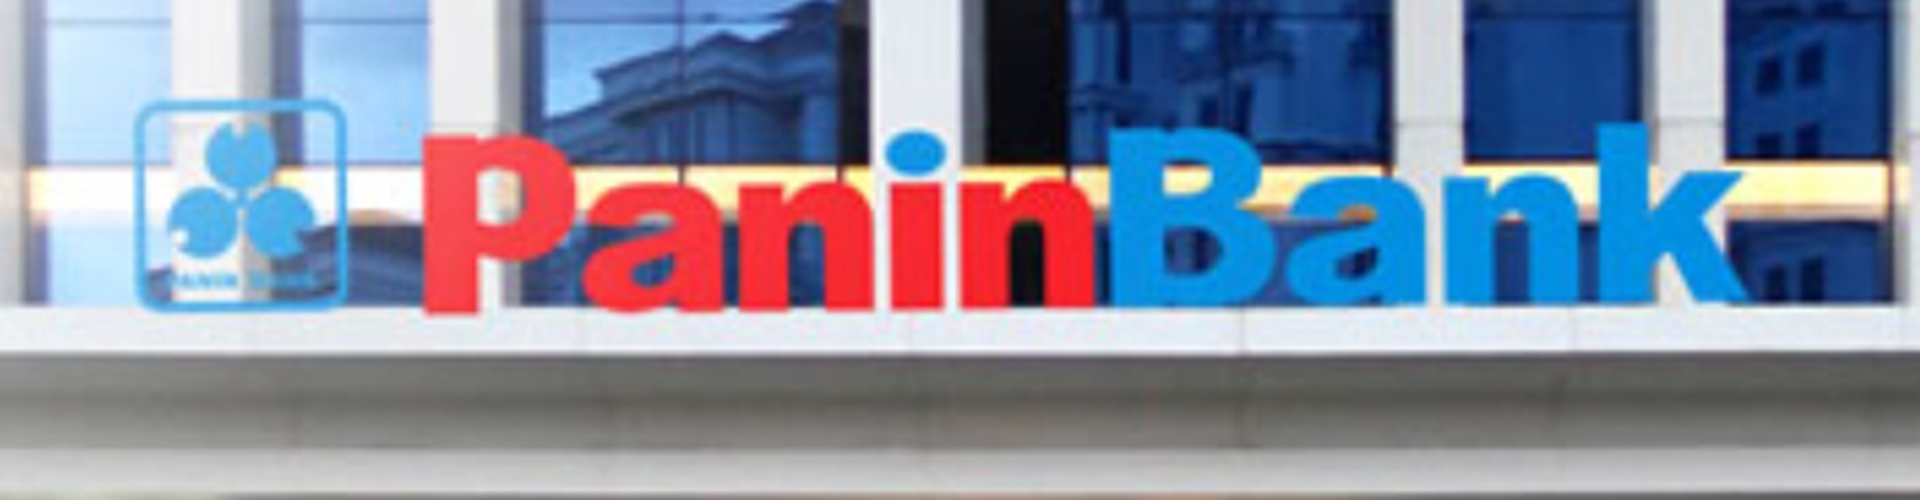 Rumor divestasi saham ANZ di Bank Panin kerap muncul setiap tahun seiring dengan kenaikan harga saham PNBN.  - Bisnis.com